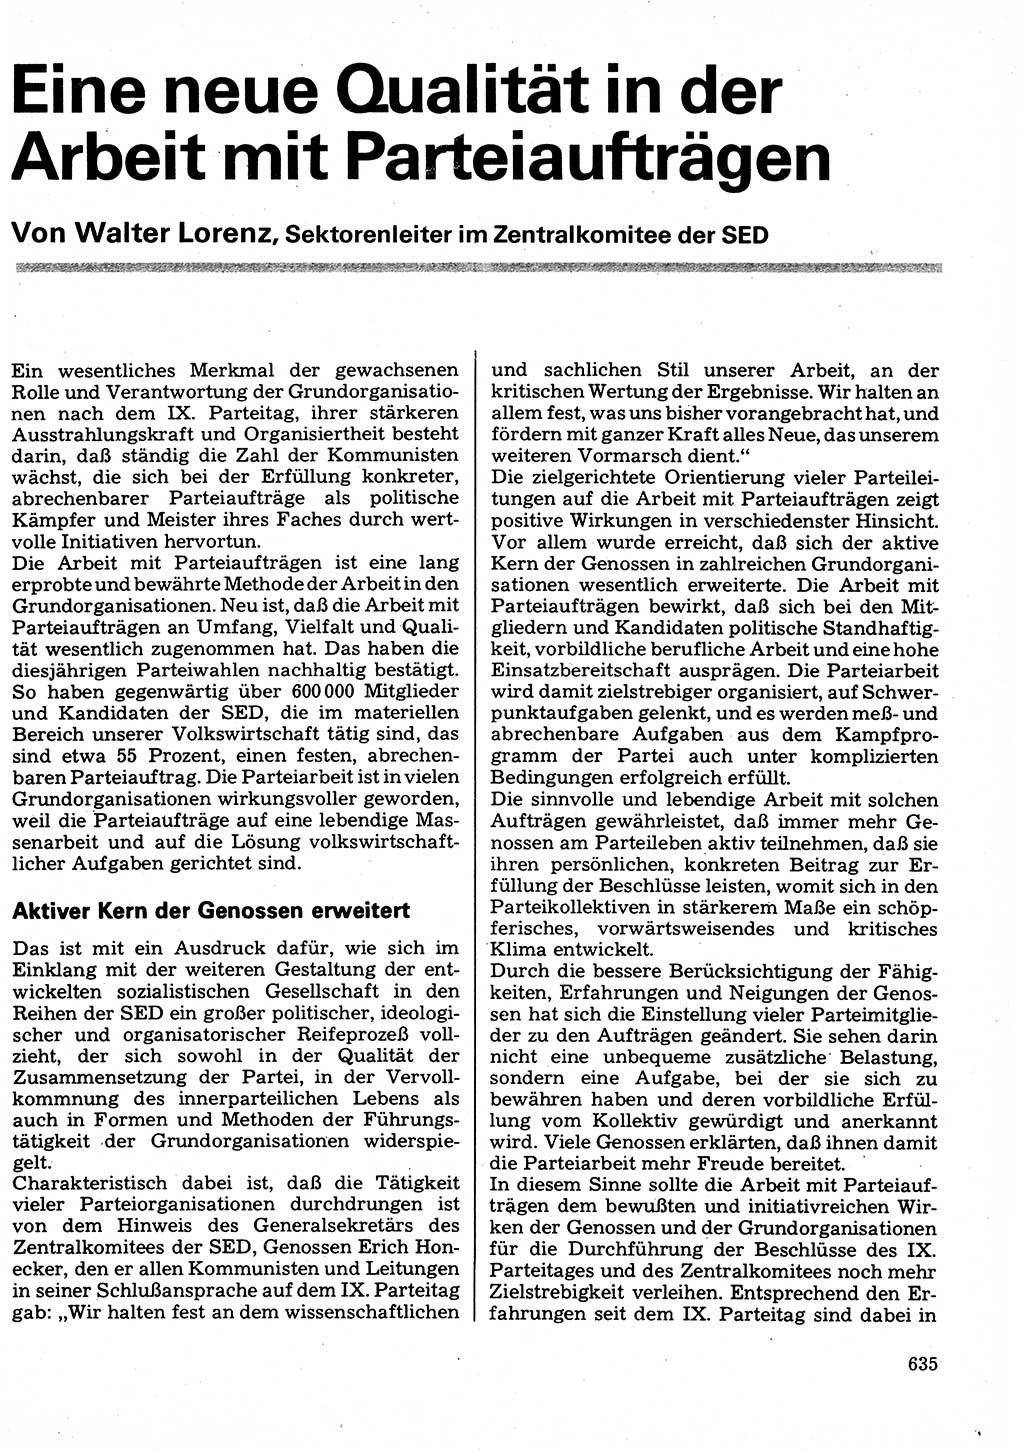 Neuer Weg (NW), Organ des Zentralkomitees (ZK) der SED (Sozialistische Einheitspartei Deutschlands) für Fragen des Parteilebens, 32. Jahrgang [Deutsche Demokratische Republik (DDR)] 1977, Seite 635 (NW ZK SED DDR 1977, S. 635)